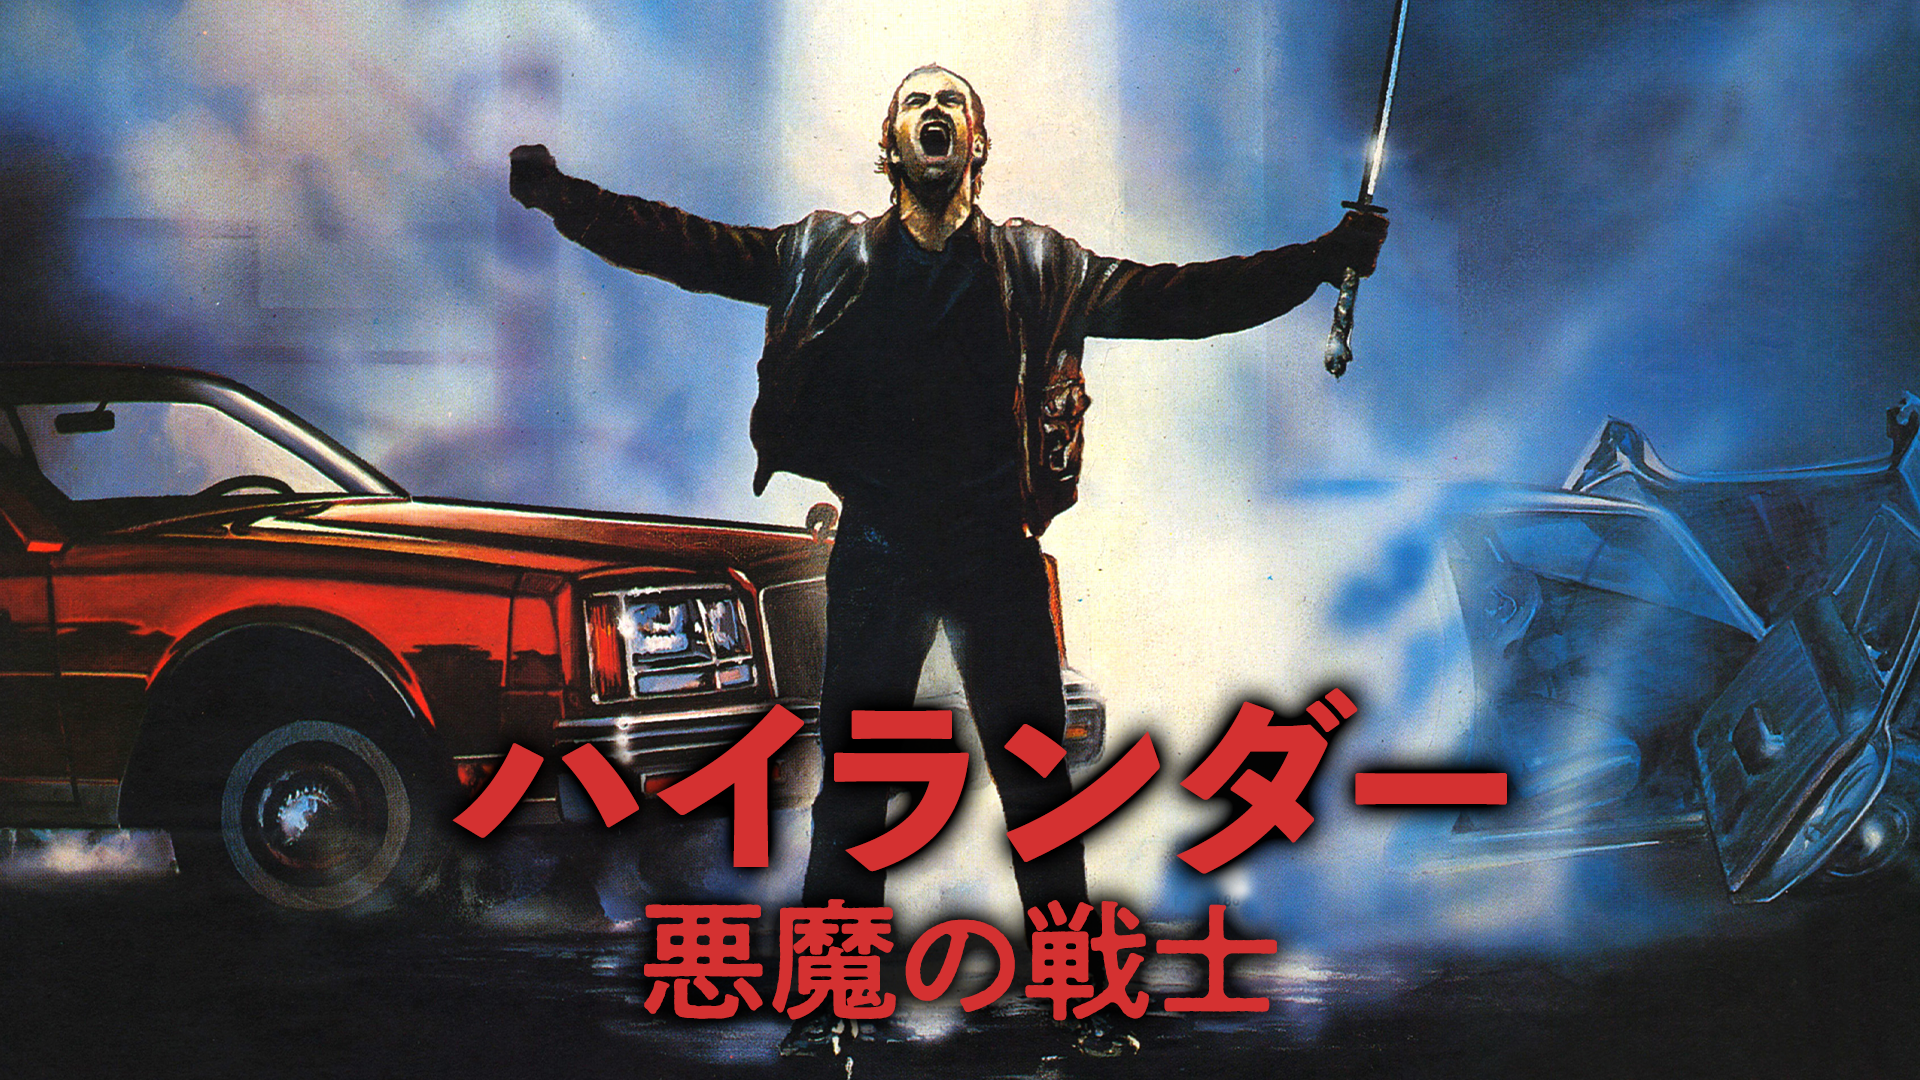 ハイランダー 悪魔の戦士(洋画 / 1986) - 動画配信 | U-NEXT 31日間 ...